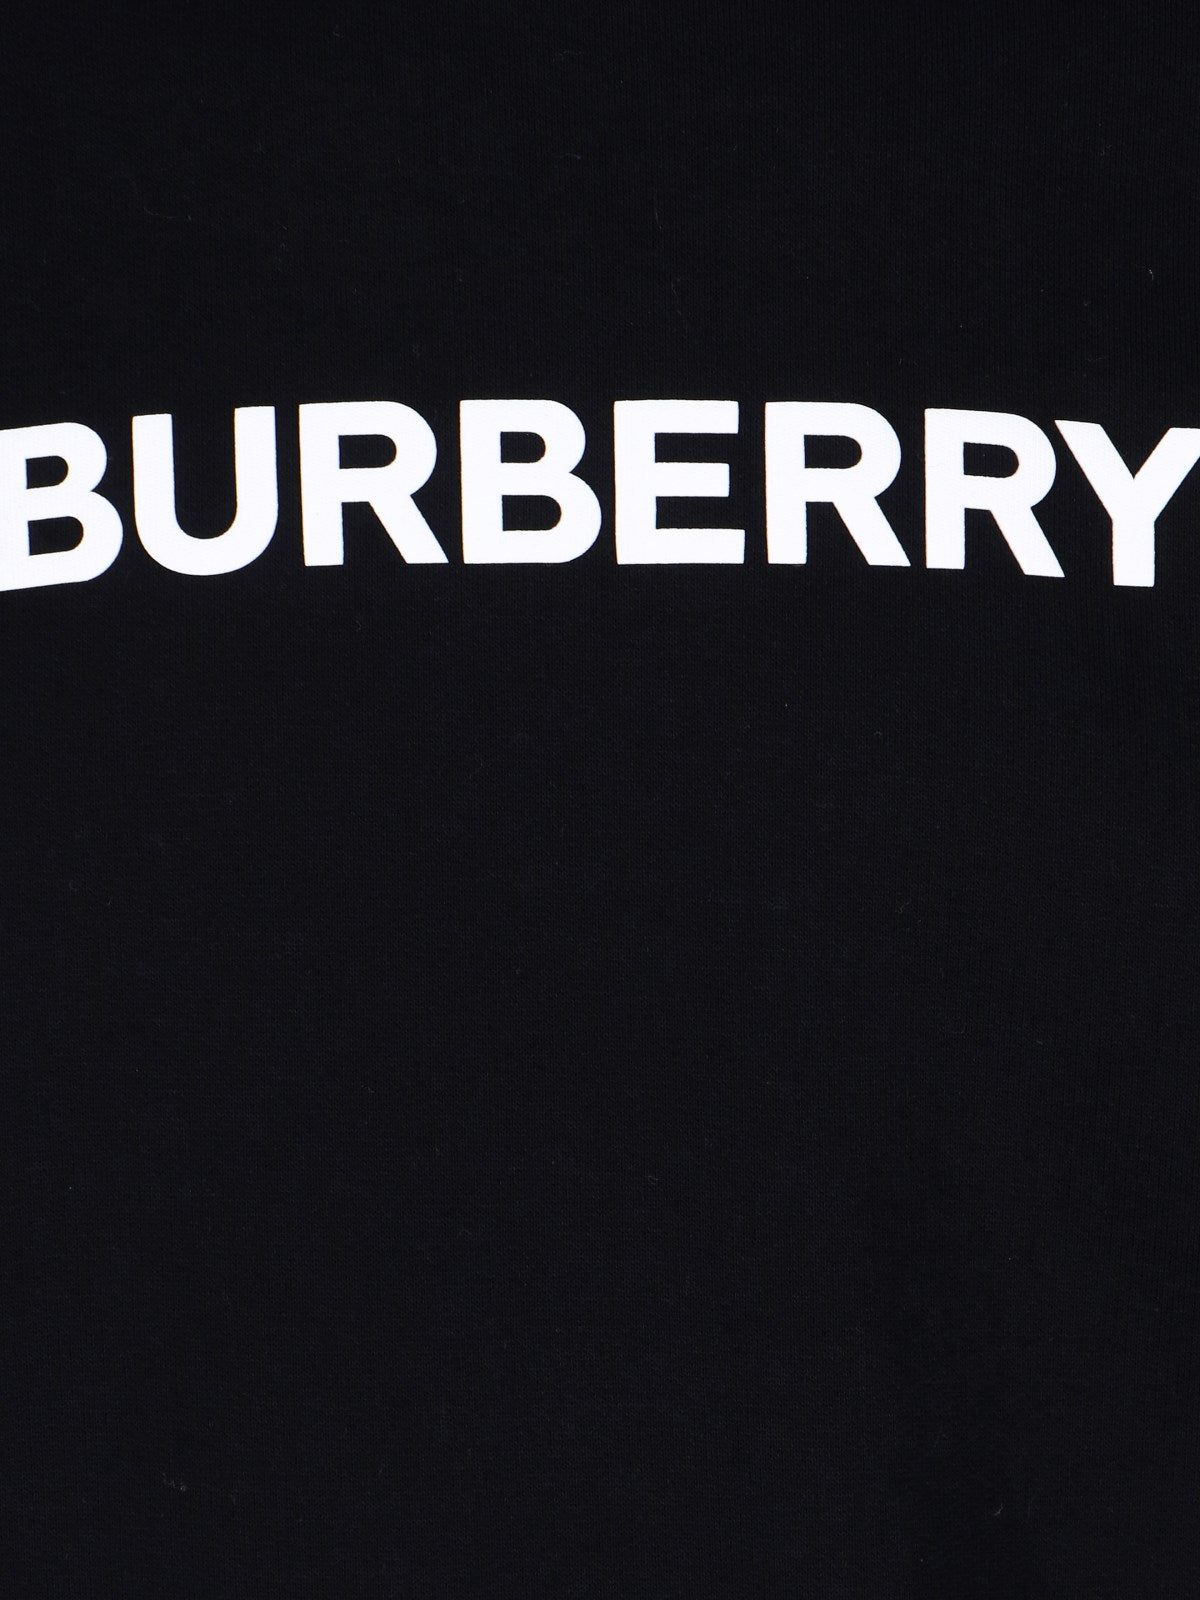 Burberry Felpa girocollo logo-felpe girocollo-Burberry-Felpa girocollo logo Burberry, in cotone nero, stampa logo bianco fronte, finiture a costine, orlo dritto.-Dresso